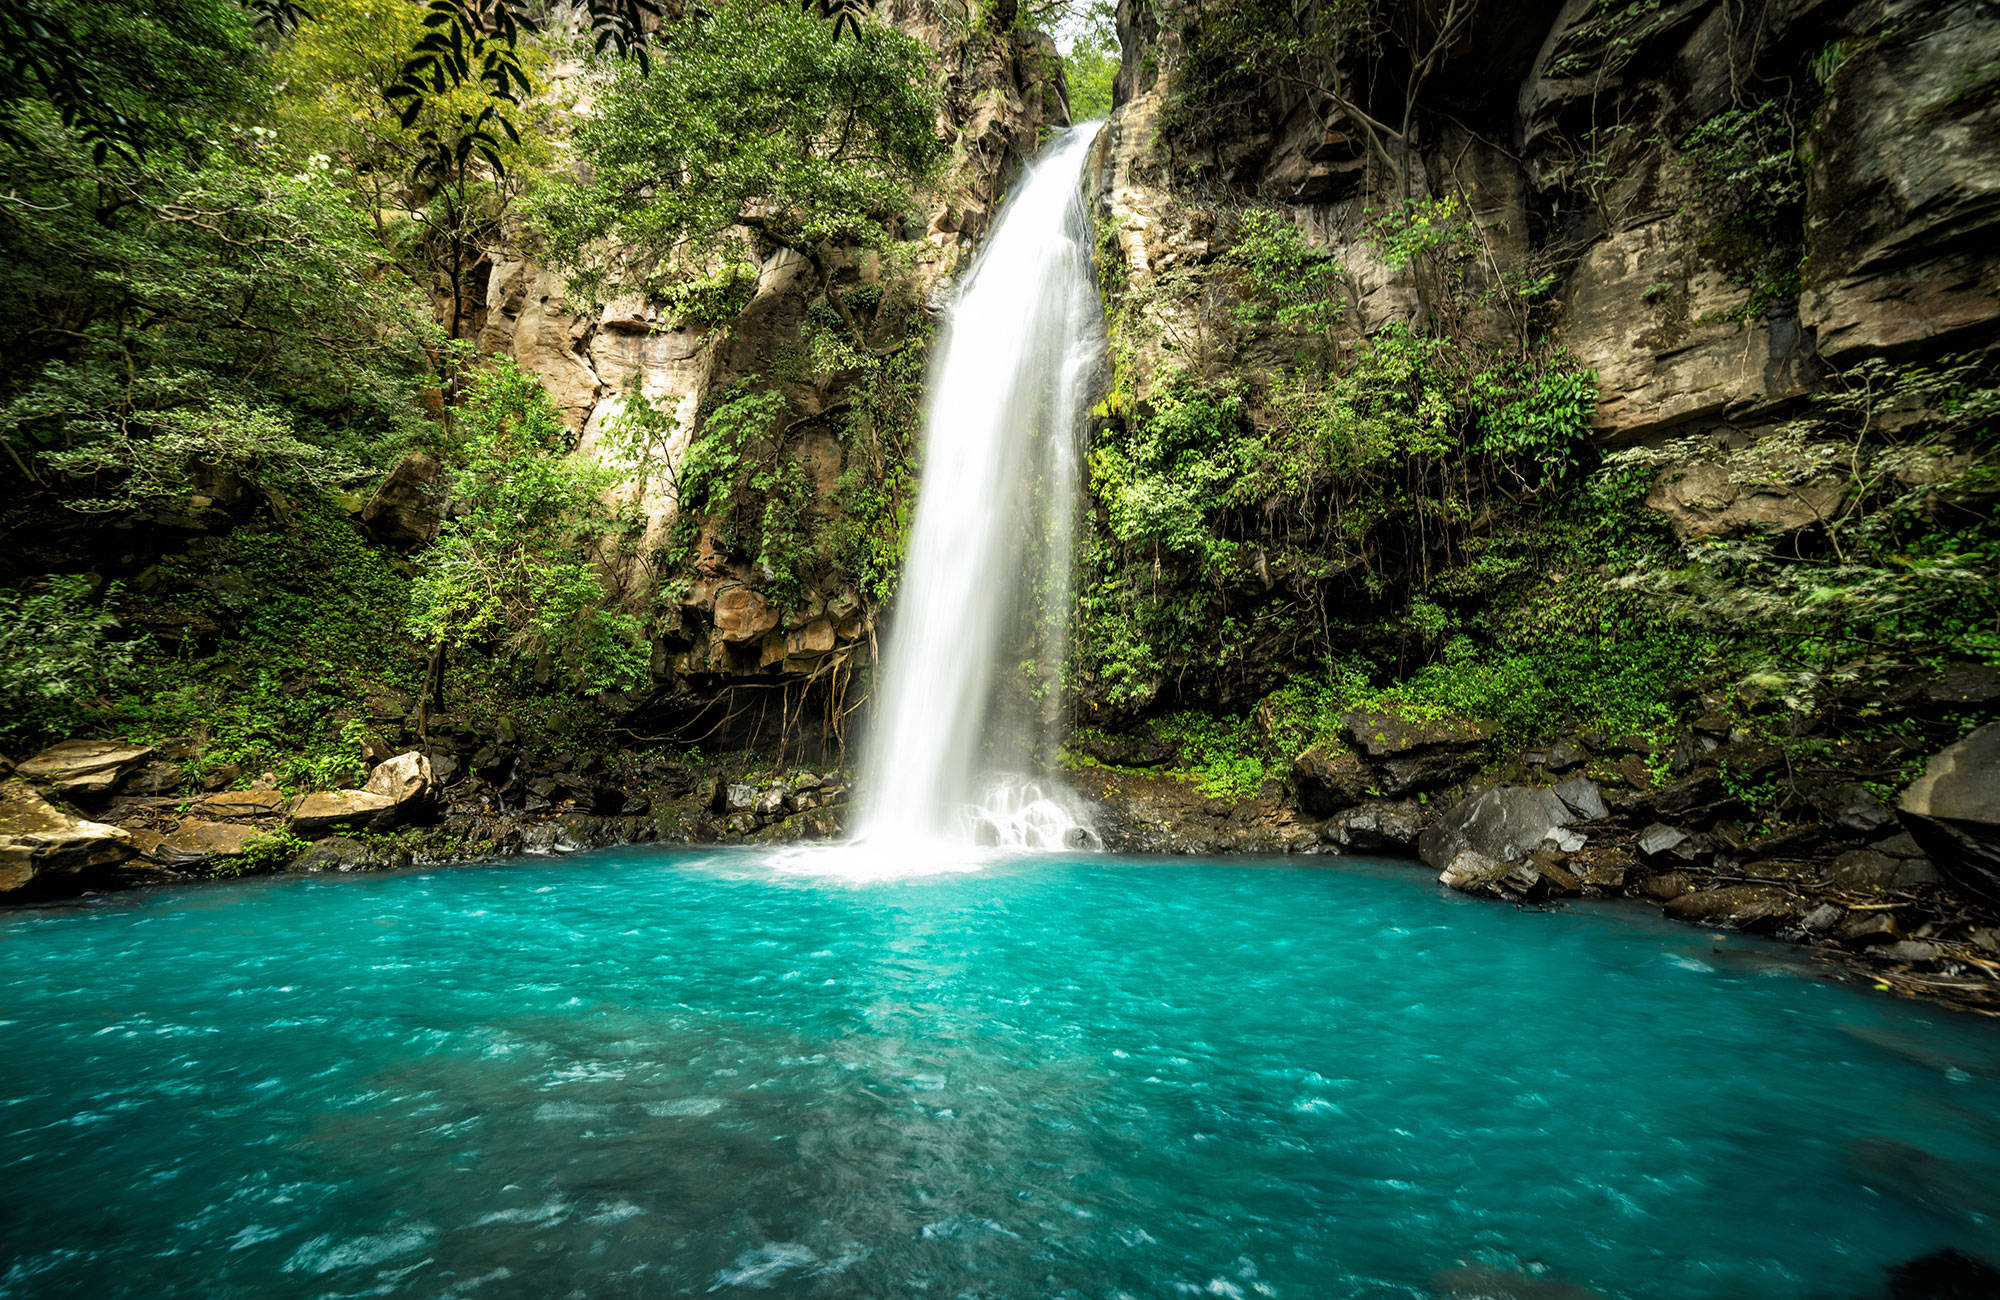 Zwem onder een waterval tijdens je rondreis door Costa Rica | Backpacken Costa Rica | KILROY